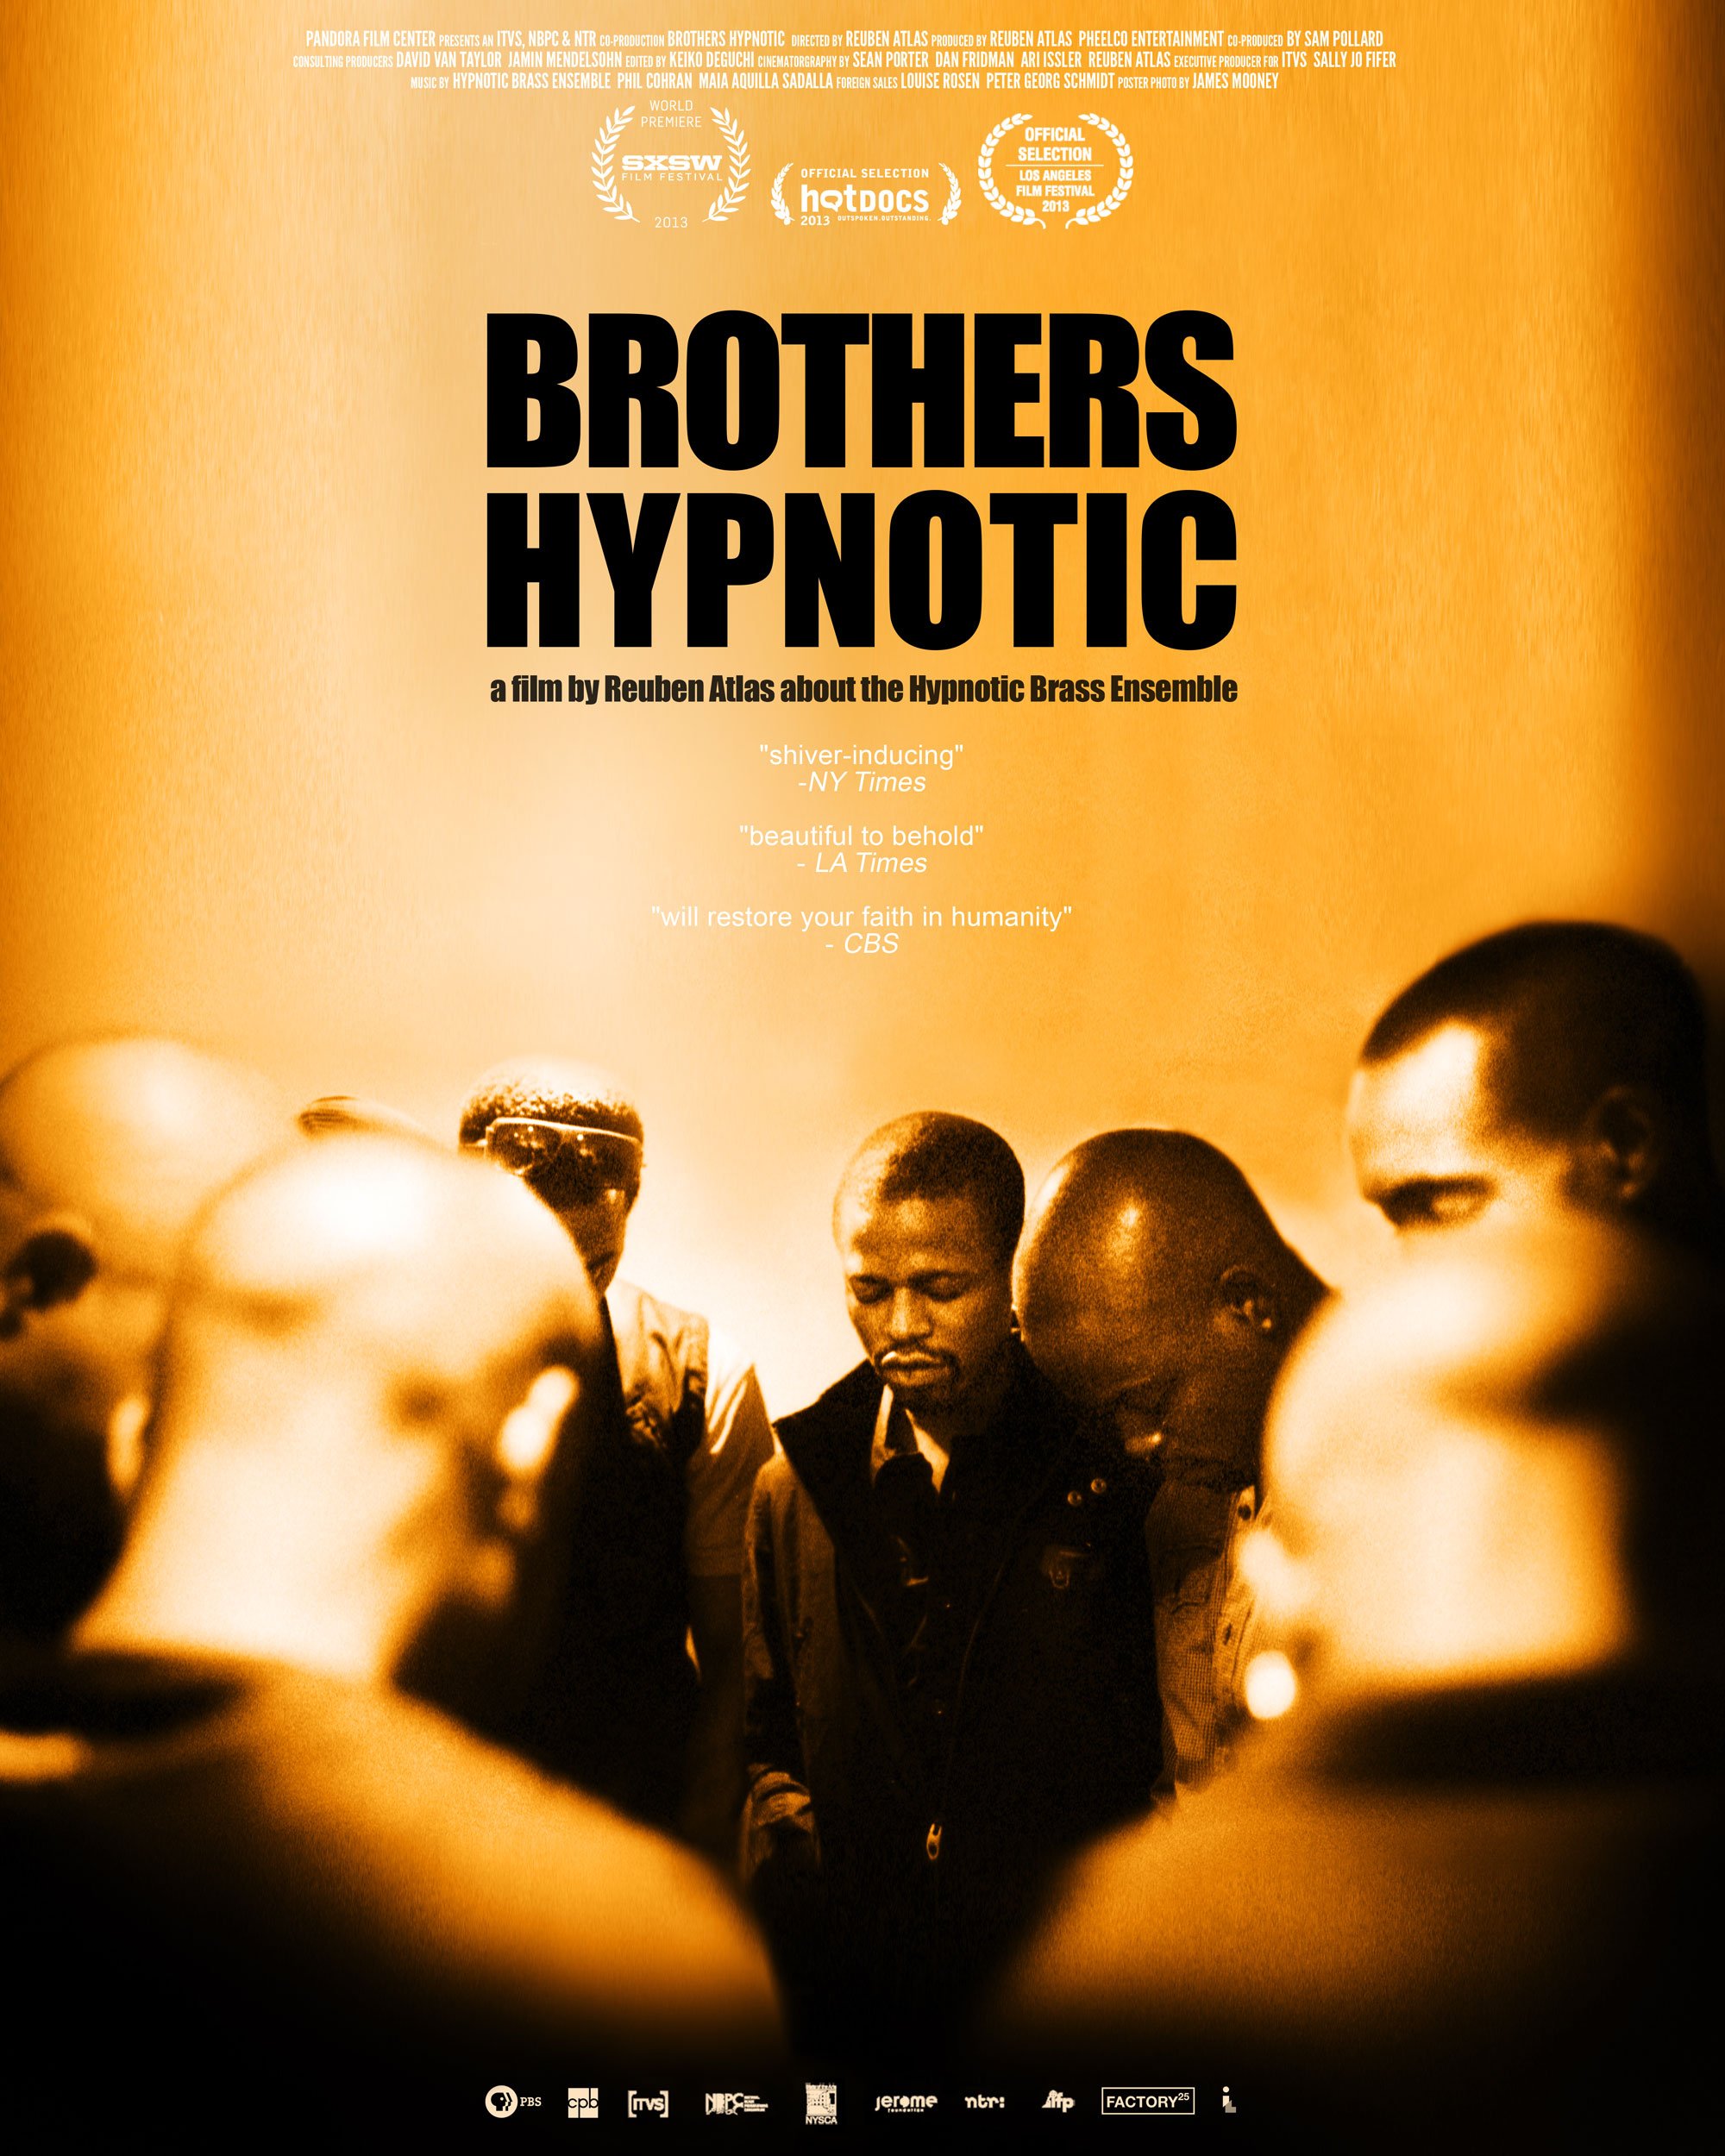 BROTHERS HYPNOTIC /// REUBAN ATLAS